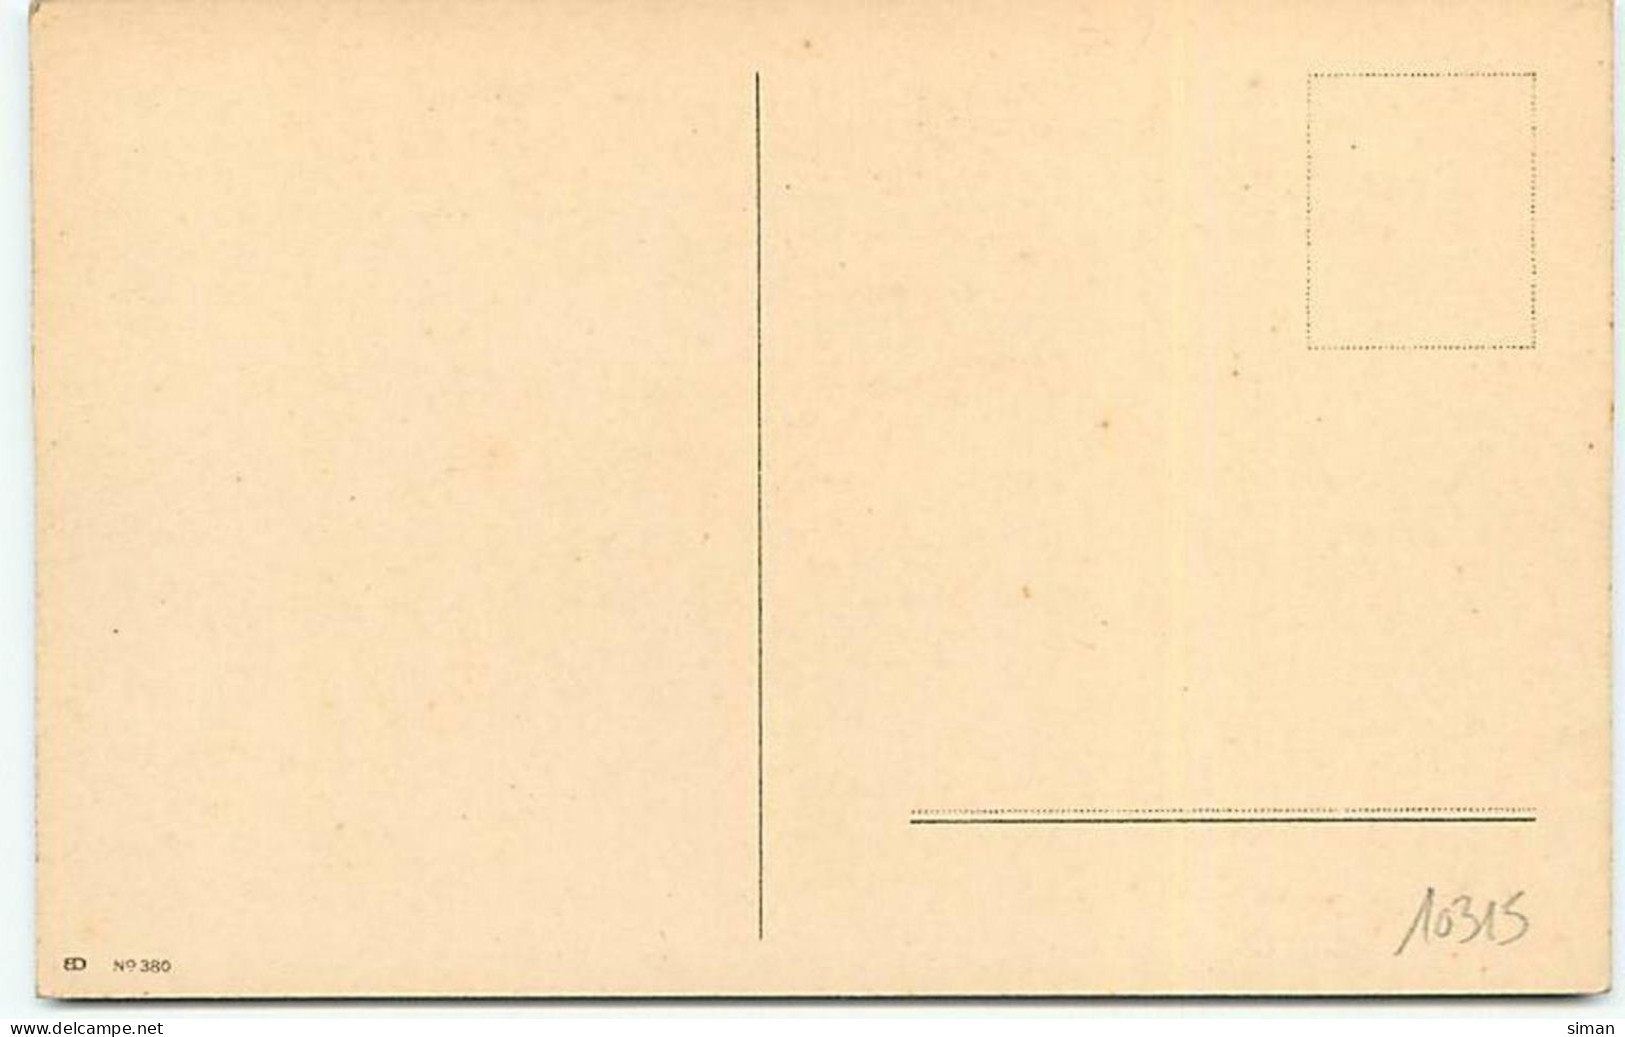 N°10315 - Carte Illustrateur - Ethel Parkinson - Jeunes Hollandais : Réconfort - Parkinson, Ethel